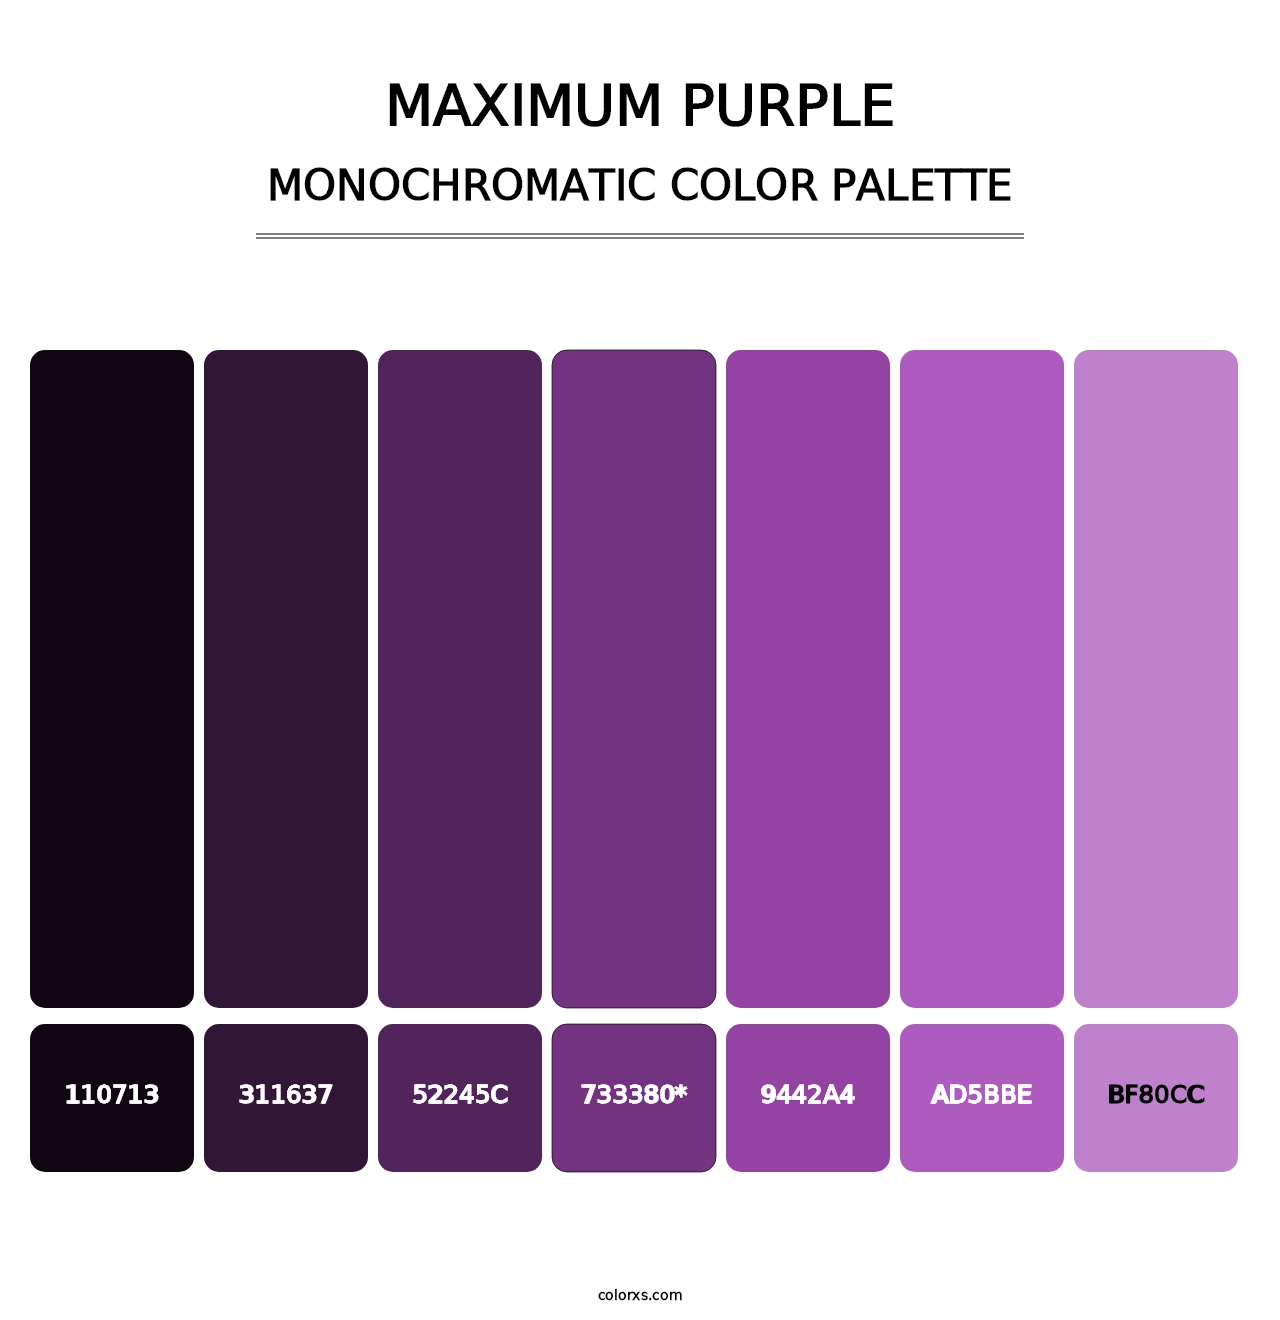 Maximum Purple - Monochromatic Color Palette